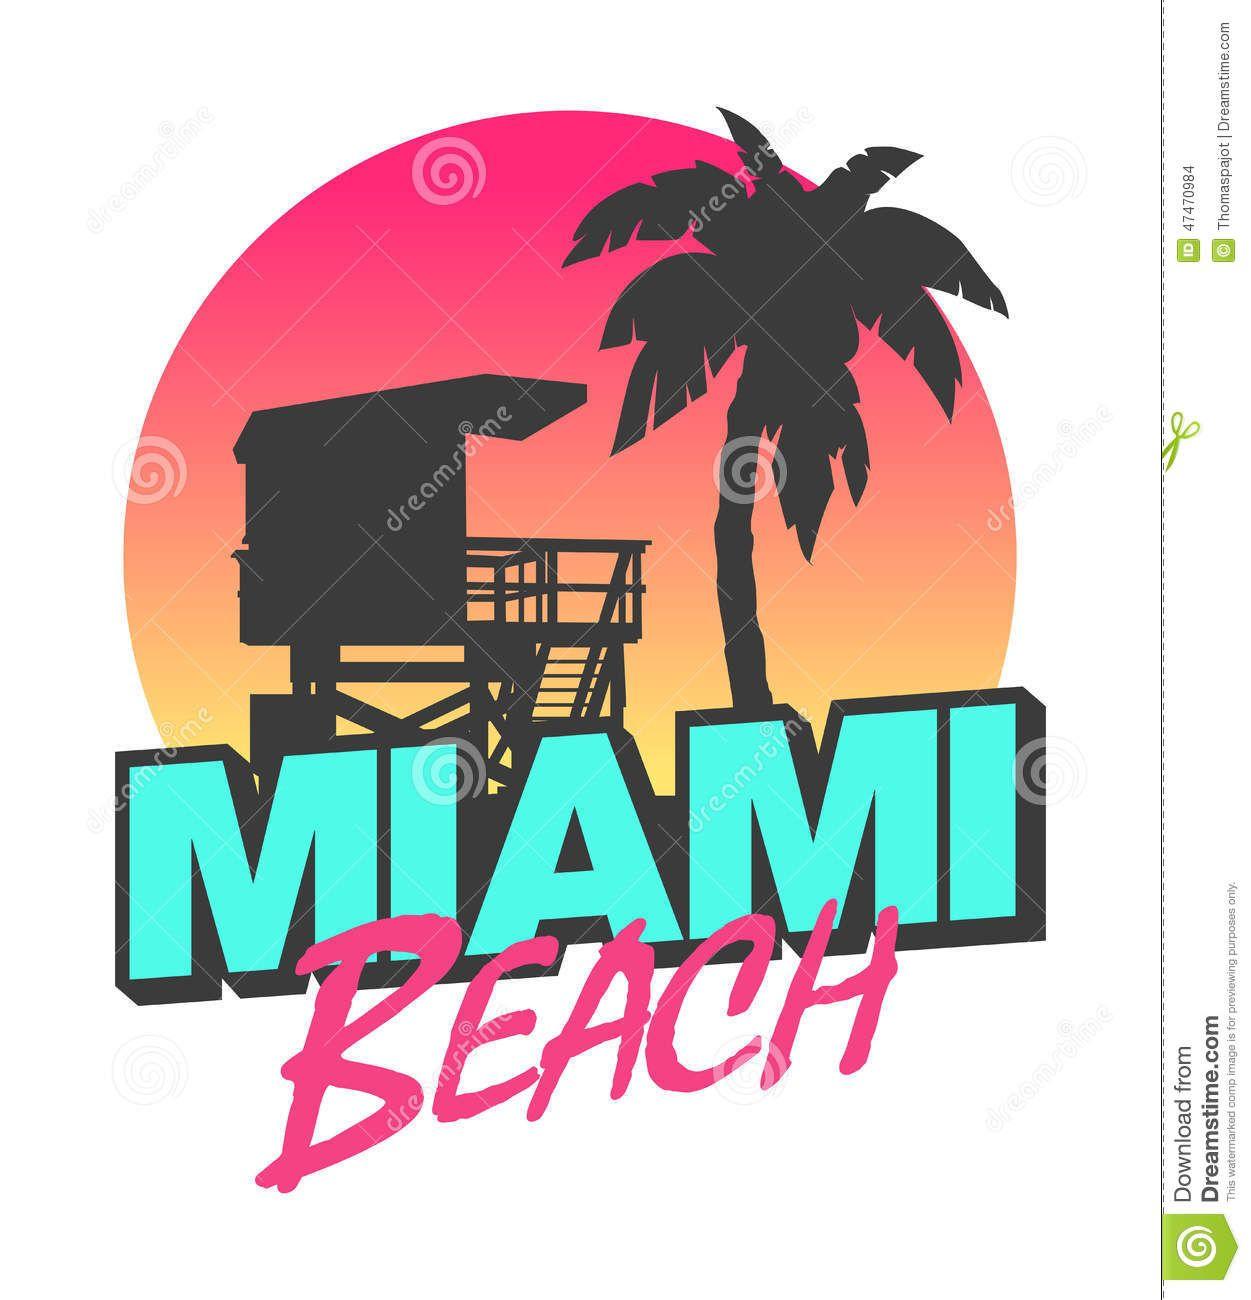 Miami Logo - miami beach logo design - Google Search | KABANA MURAL | Beach logo ...